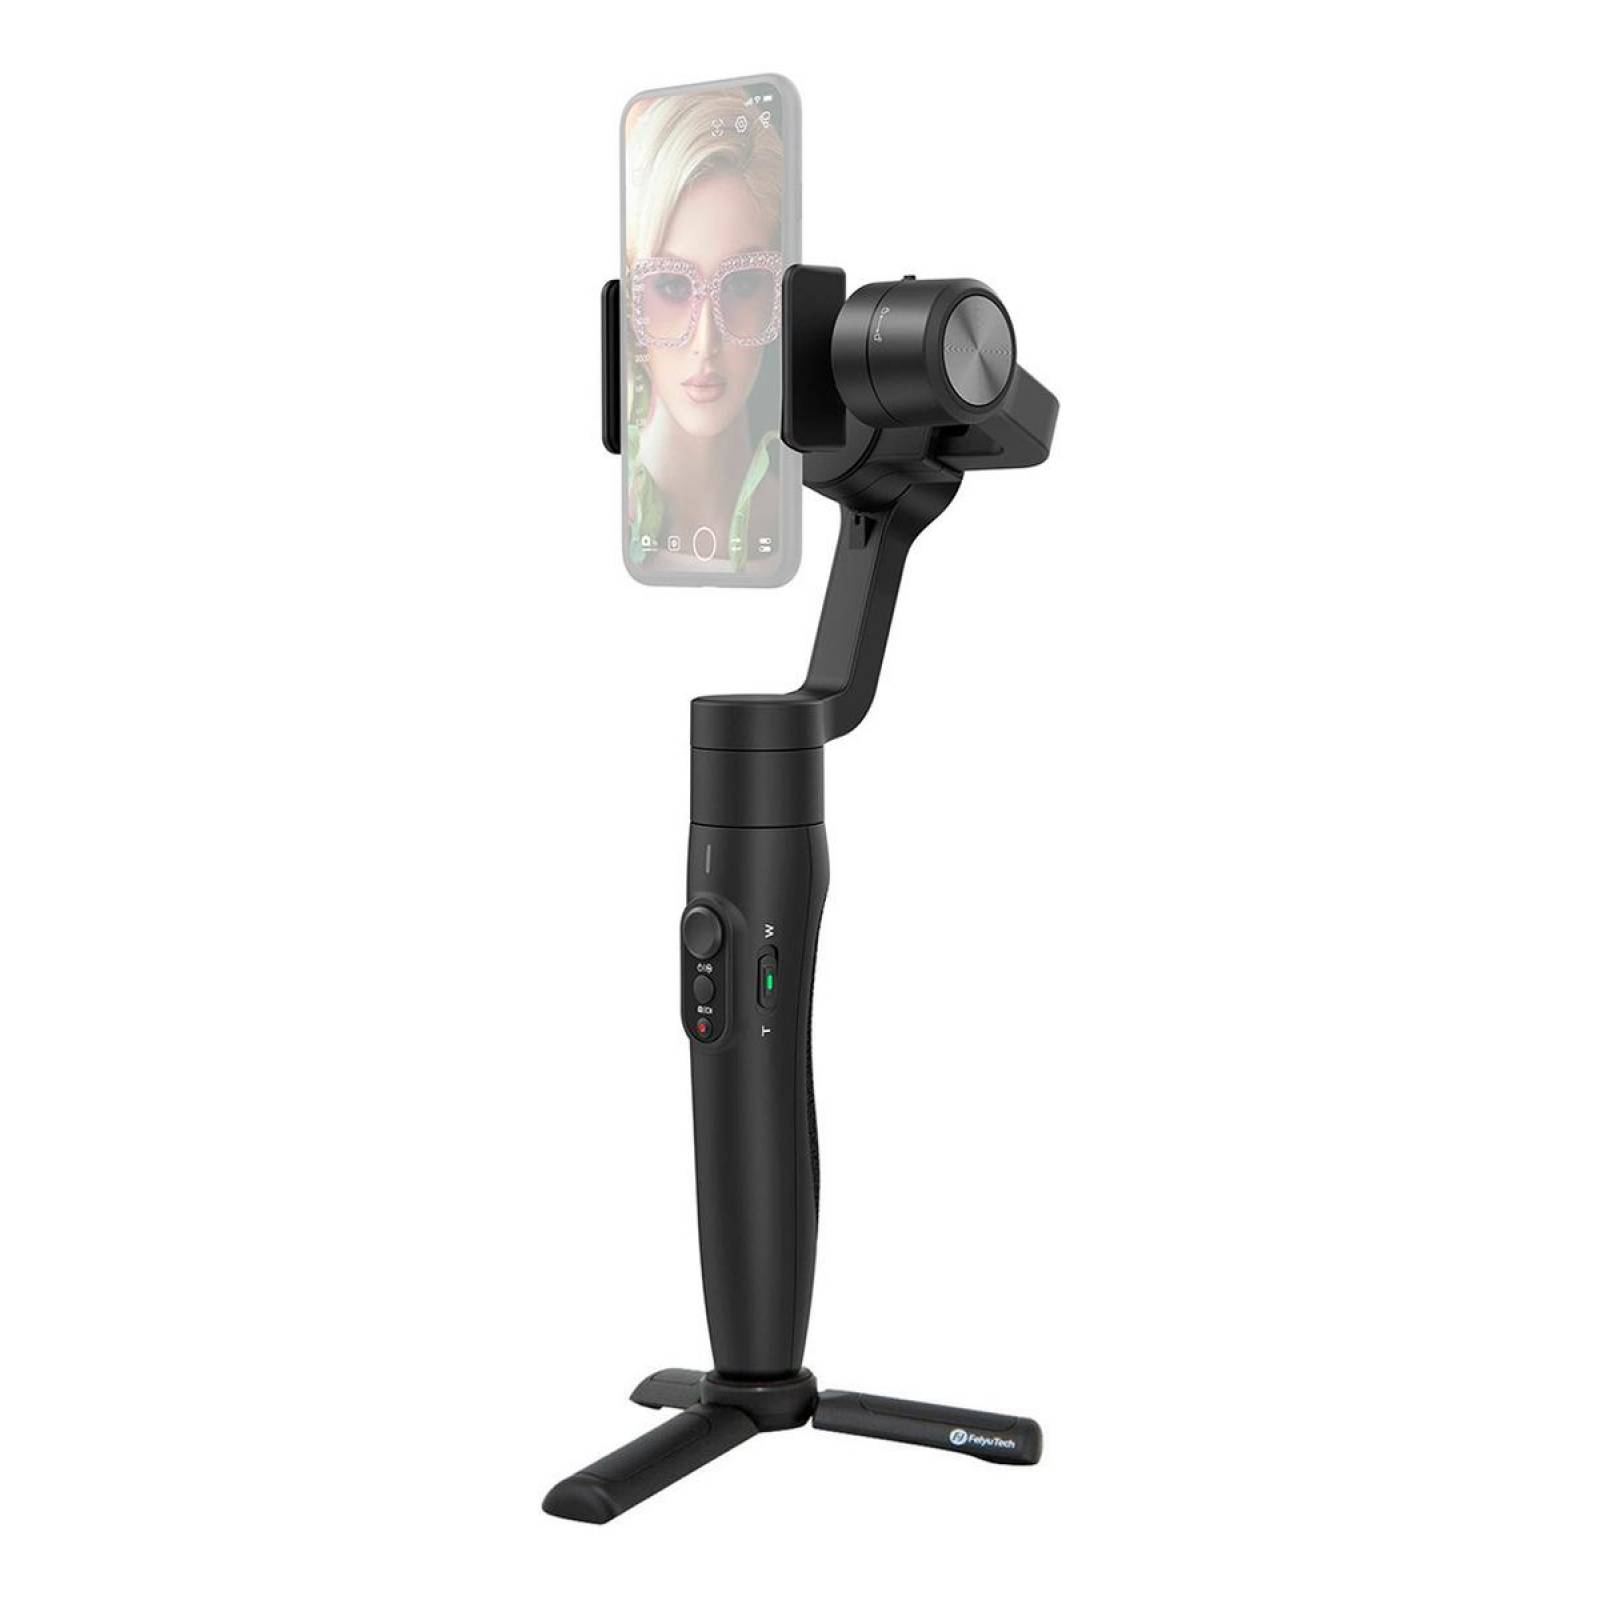 Estabilizador Binden Vimble2s Para Smartphones Selfie Stick 